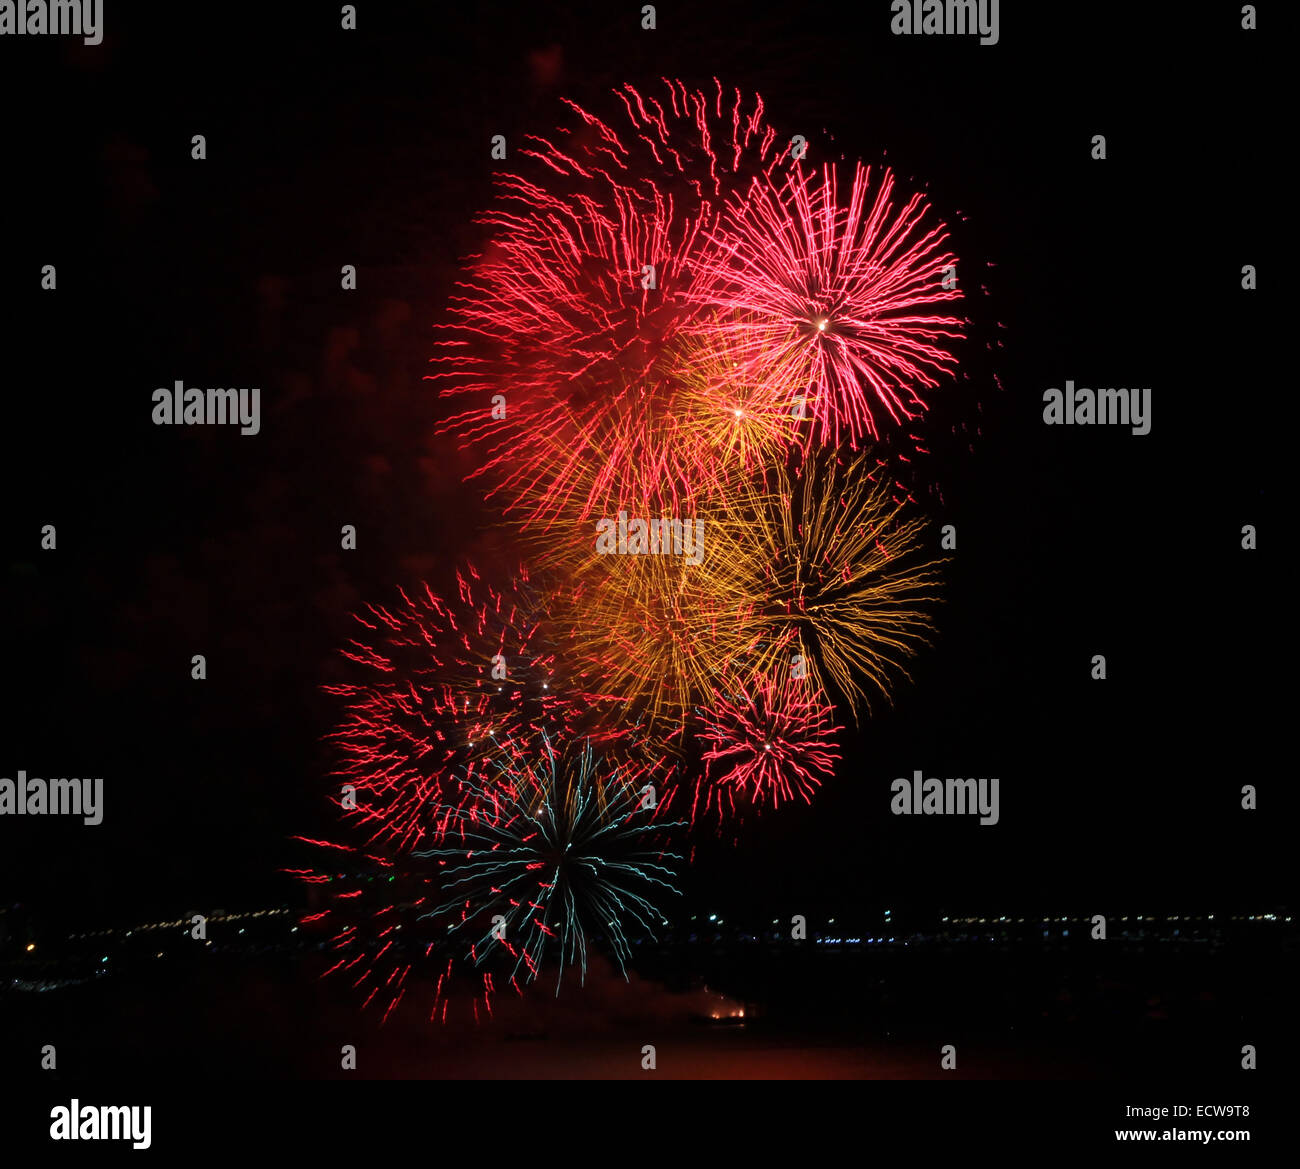 Close-up of a multi-couleur d'artifice symbolisant la nouvelle année, de la célébration et de la pyrotechnie Banque D'Images